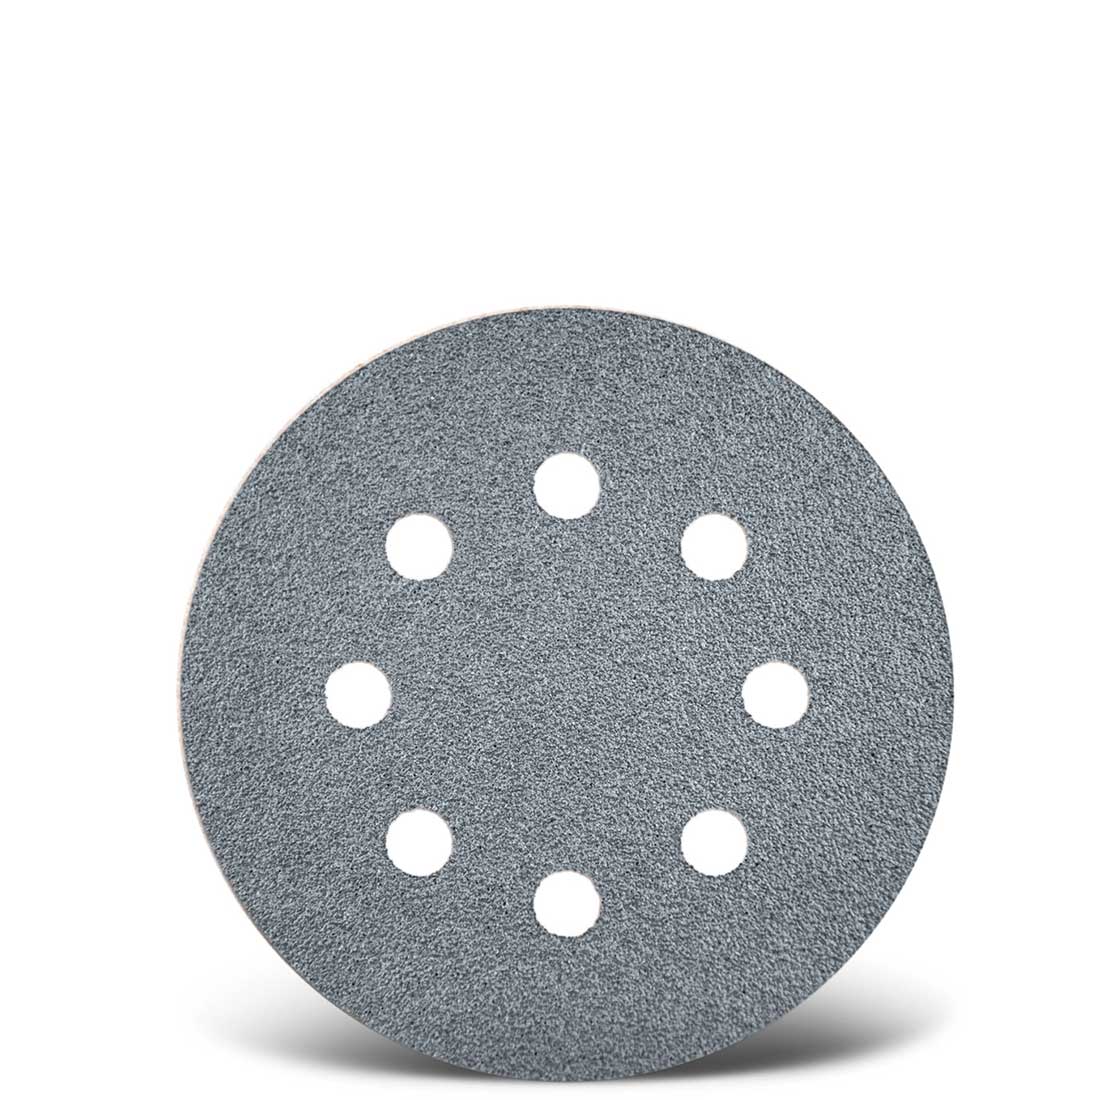 Dischi abrasivi velcrati MENZER per levigatrici rotorbitali, G40–400, Ø 125 mm / 8 fori / corindone semi-friabile con stearato